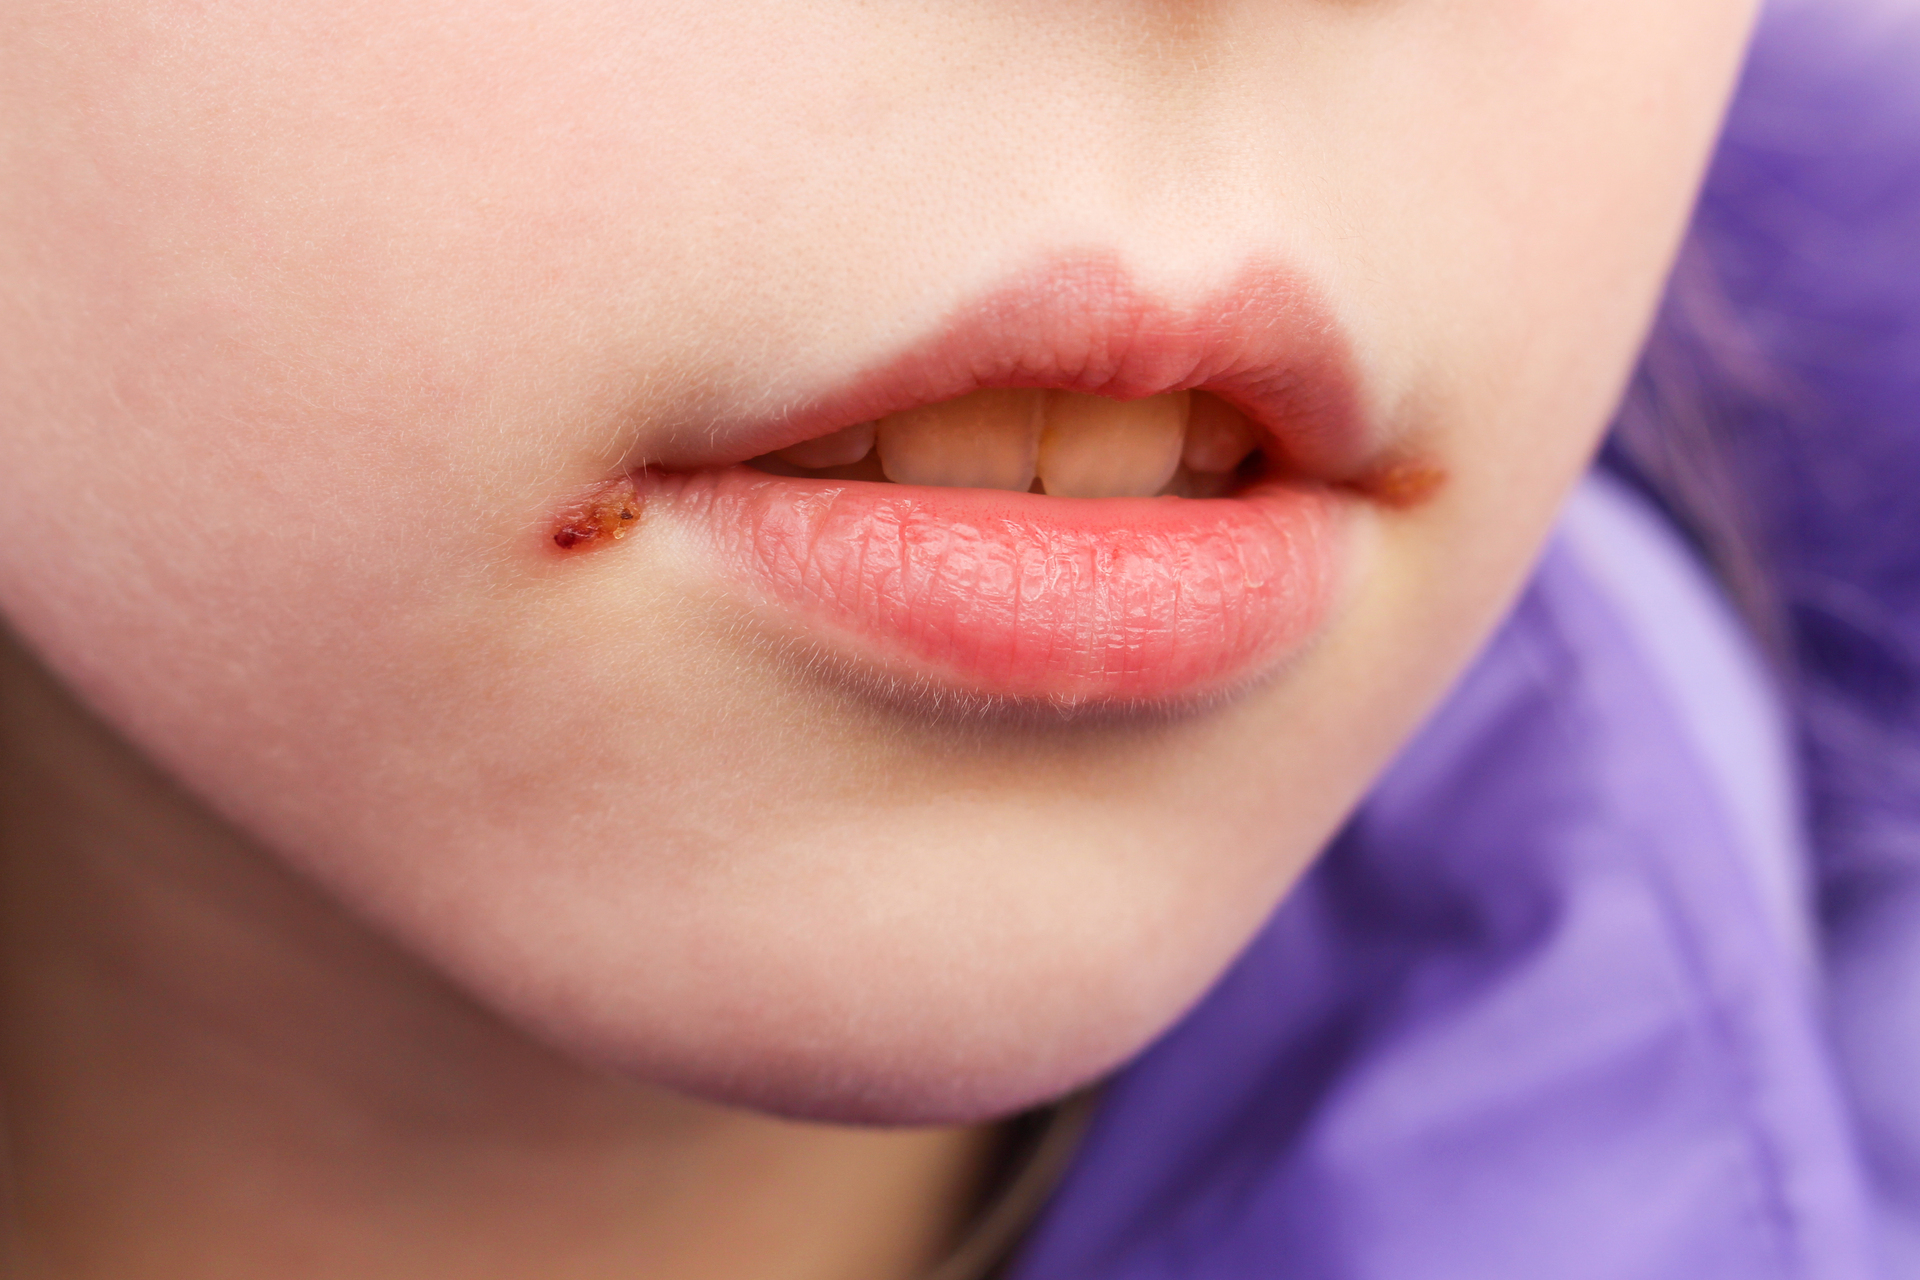 Na tym obrazku przedstawione jest dziecko z zajadami w kącikach ust, które są bolesnymi pęknięciami lub owrzodzeniami skóry. Zajady mogą być spowodowane przez czynniki takie jak infekcje, niedobory witamin lub nawyk lizania warg. Rany w kącikach ust powodują dyskomfort podczas jedzenia i mówienia, dlatego istotne jest skonsultowanie się z lekarzem w celu diagnozy i odpowiedniego leczenia, aby złagodzić objawy i przyspieszyć proces gojenia się